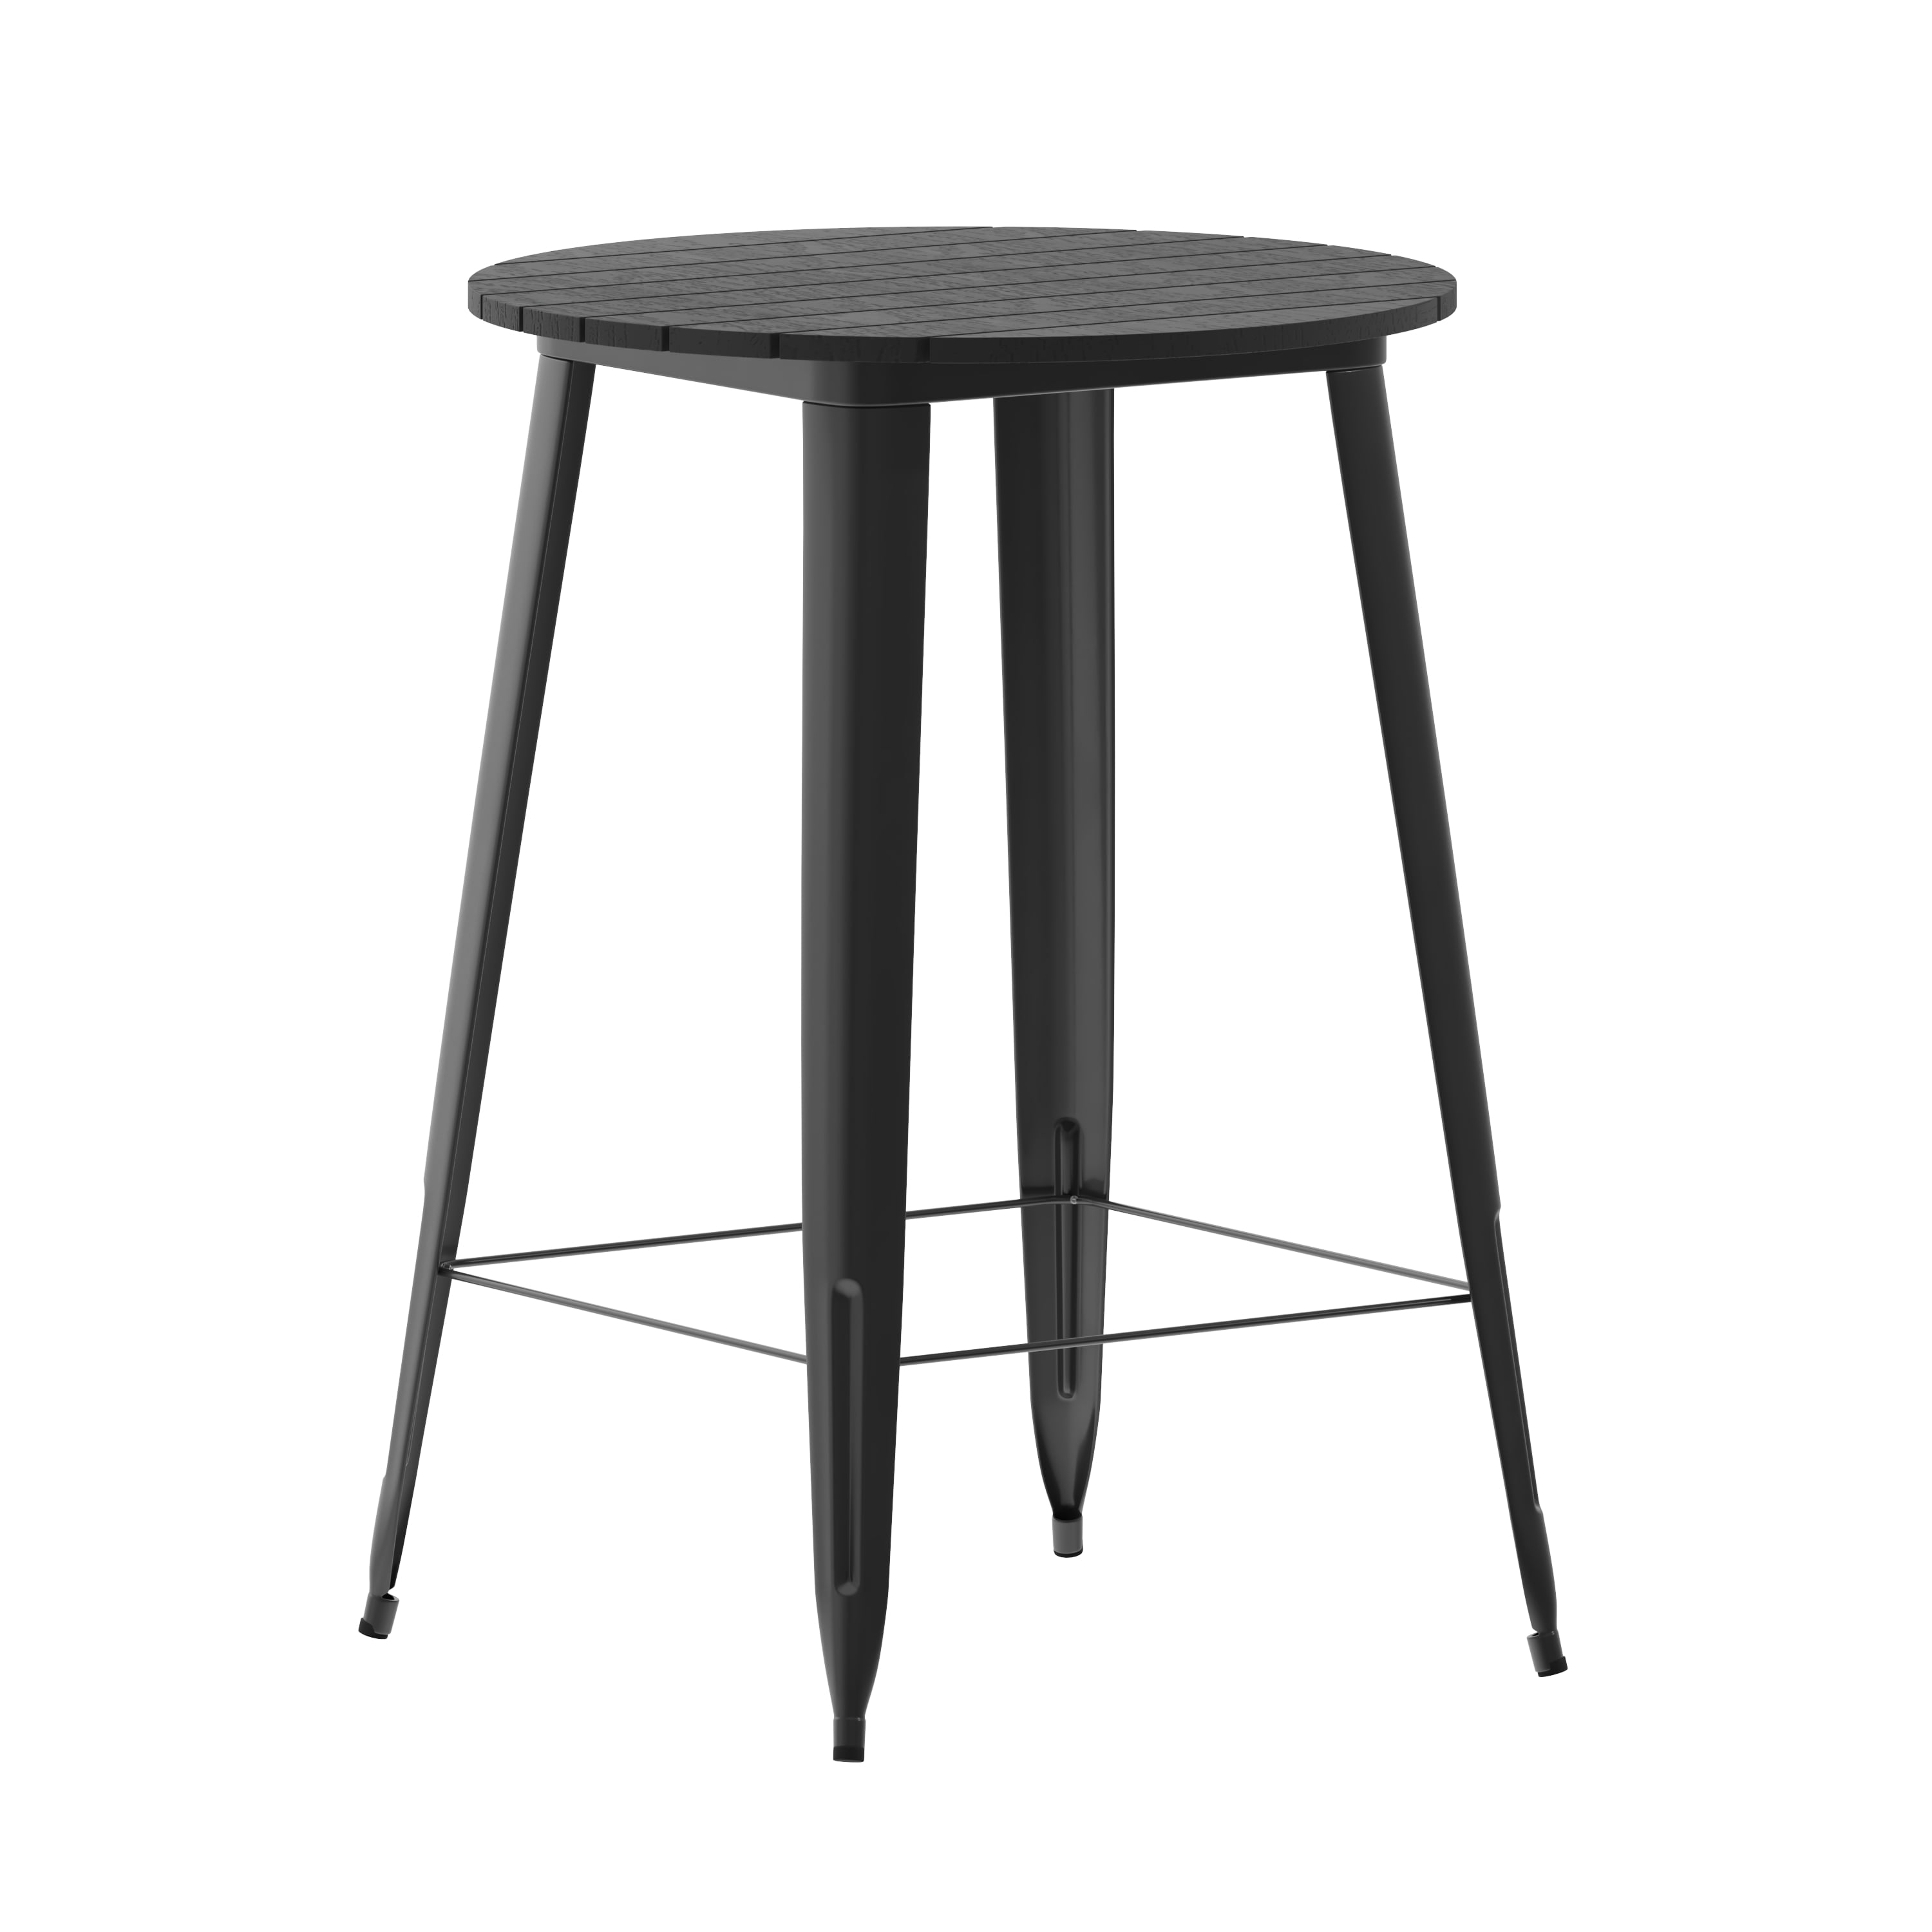 Flash Furniture Declan Commercial Indoor/Outdoor Bar Top Table, 30